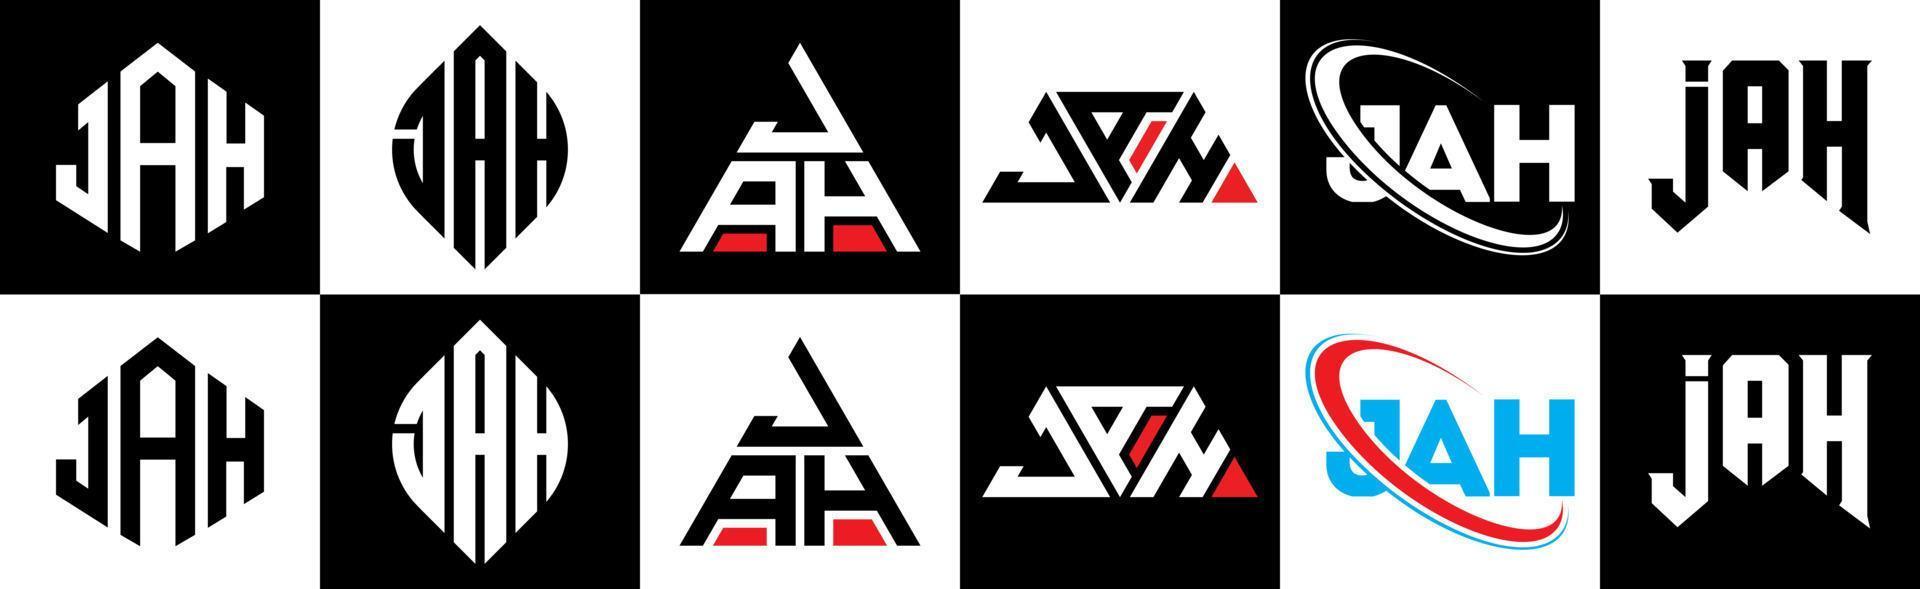 Ja-Brief-Logo-Design in sechs Stilen. jah polygon, kreis, dreieck, hexagon, flacher und einfacher stil mit schwarz-weißem farbvariationsbuchstabenlogo in einer zeichenfläche. jah minimalistisches und klassisches Logo vektor